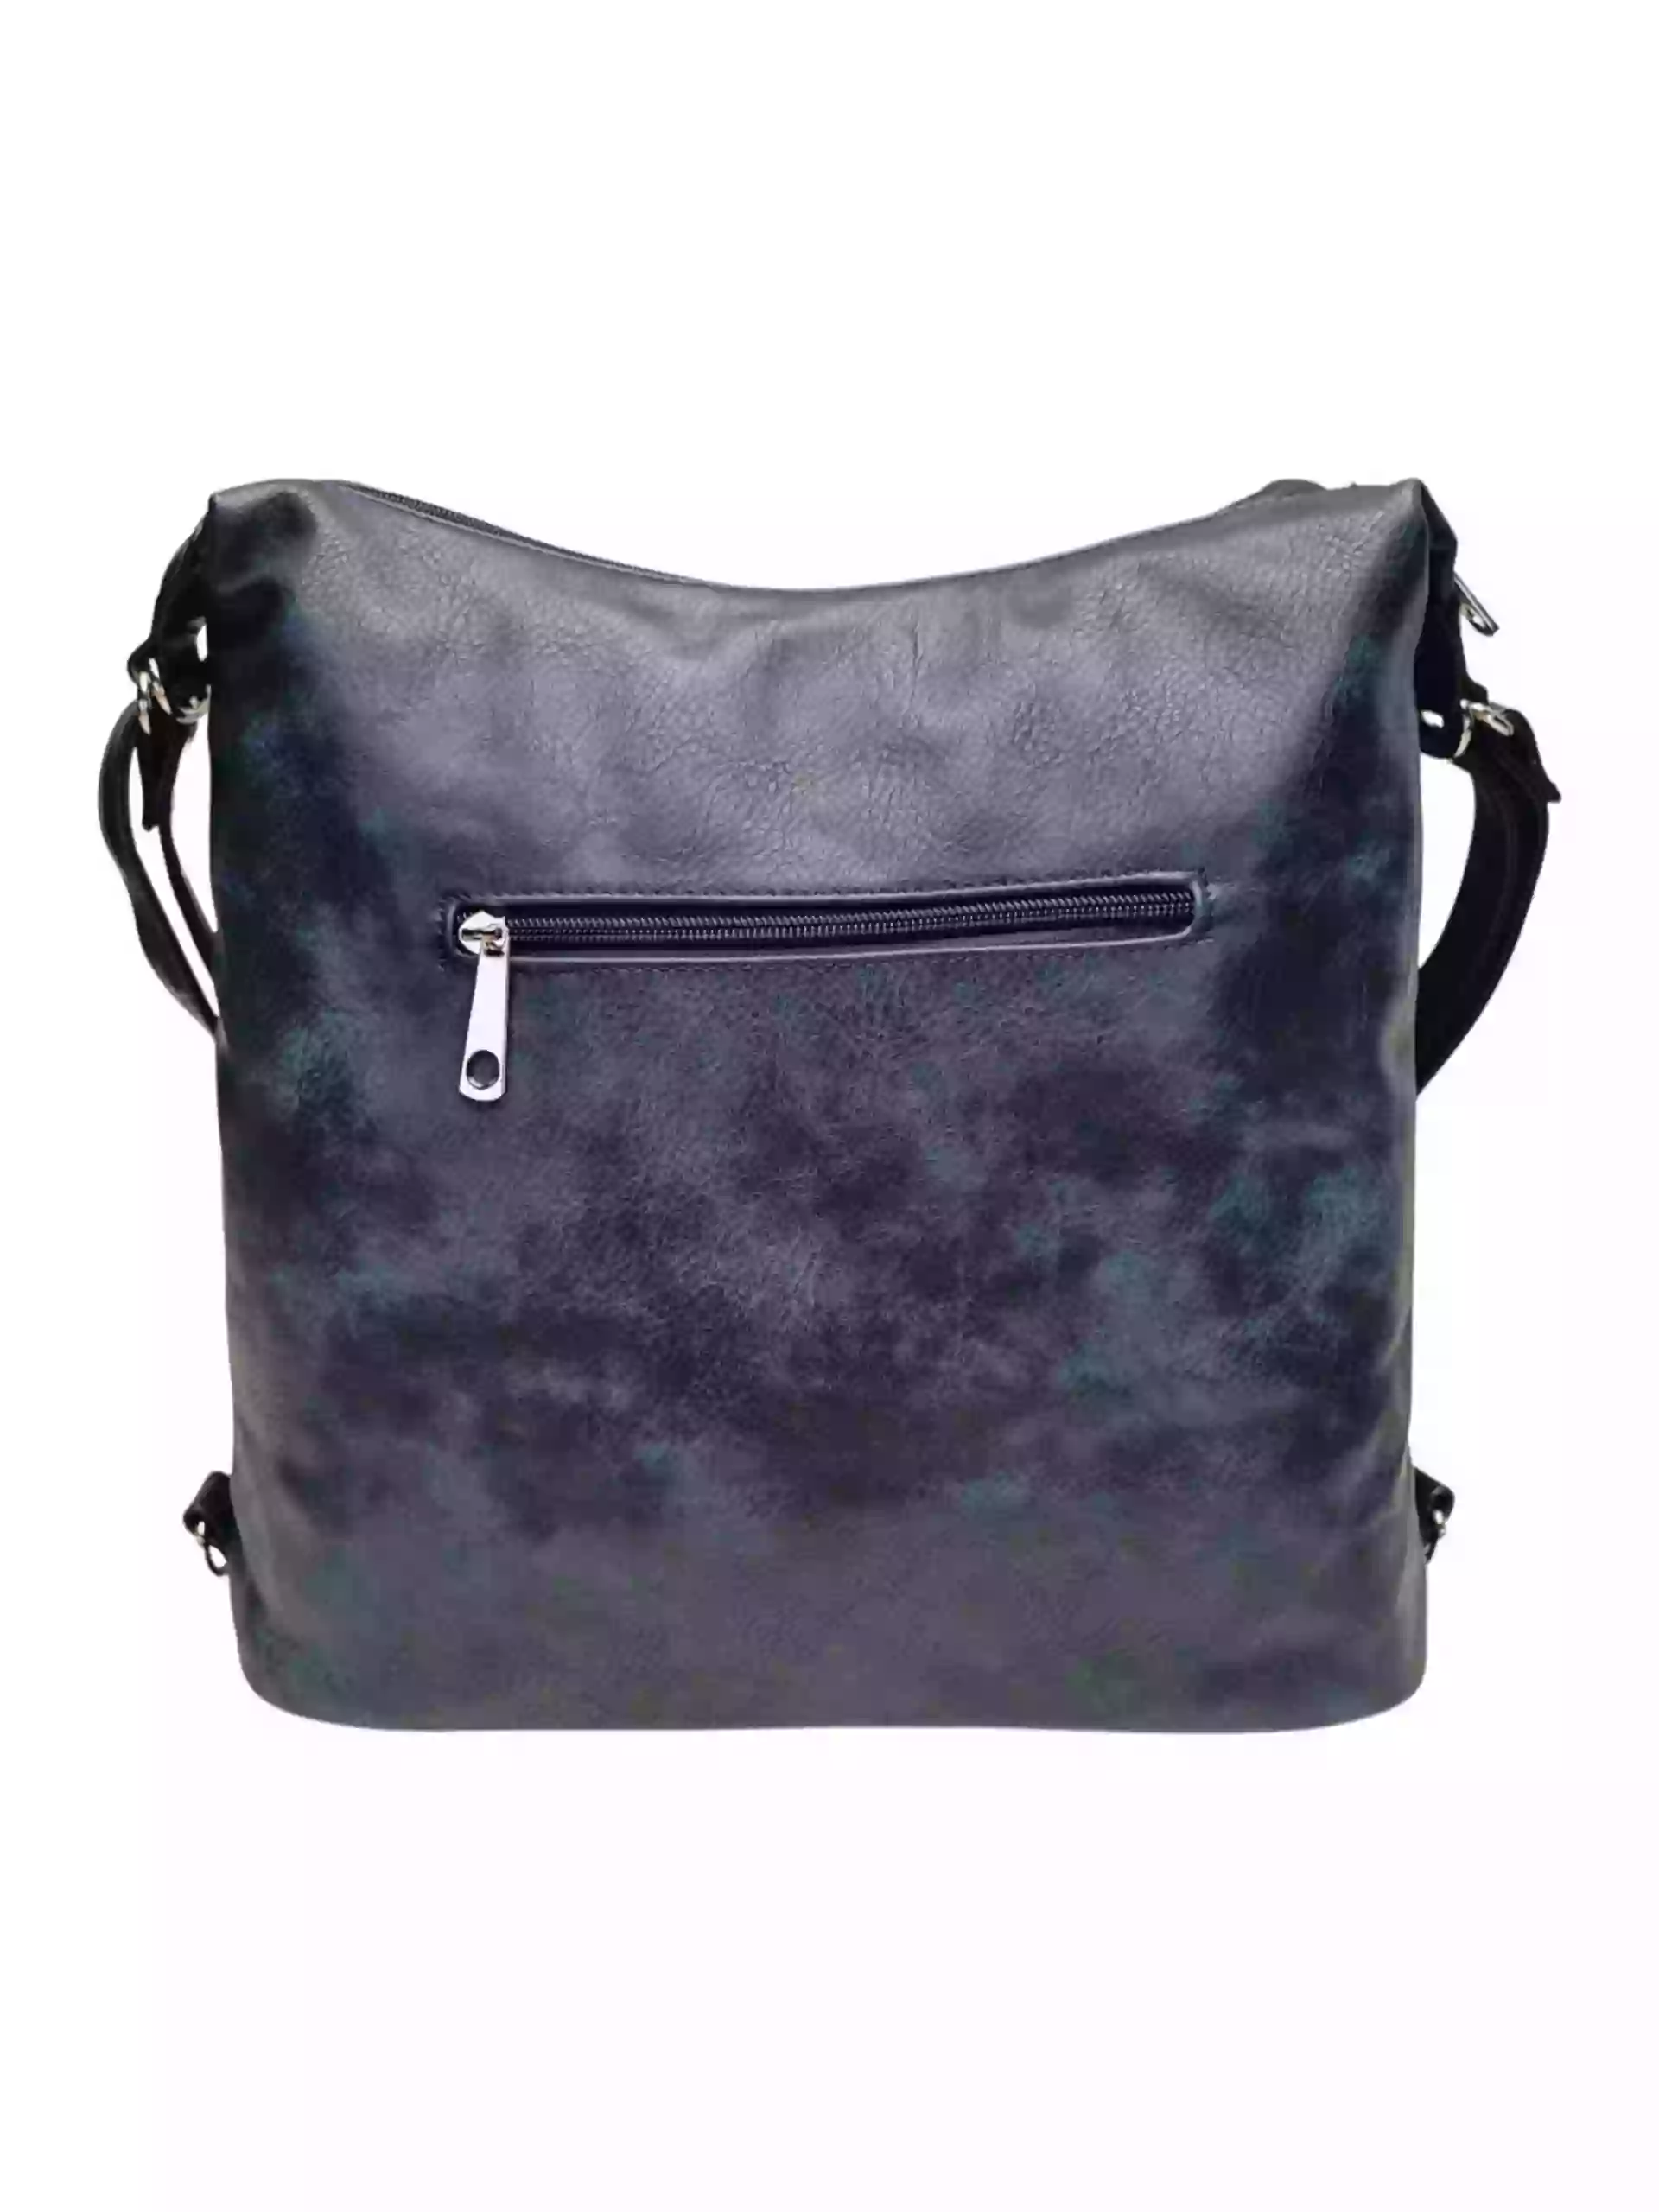 Velký tmavě modrý kabelko-batoh z eko kůže, Tapple, H18077, zadní strana kabelko-batohu 2v1